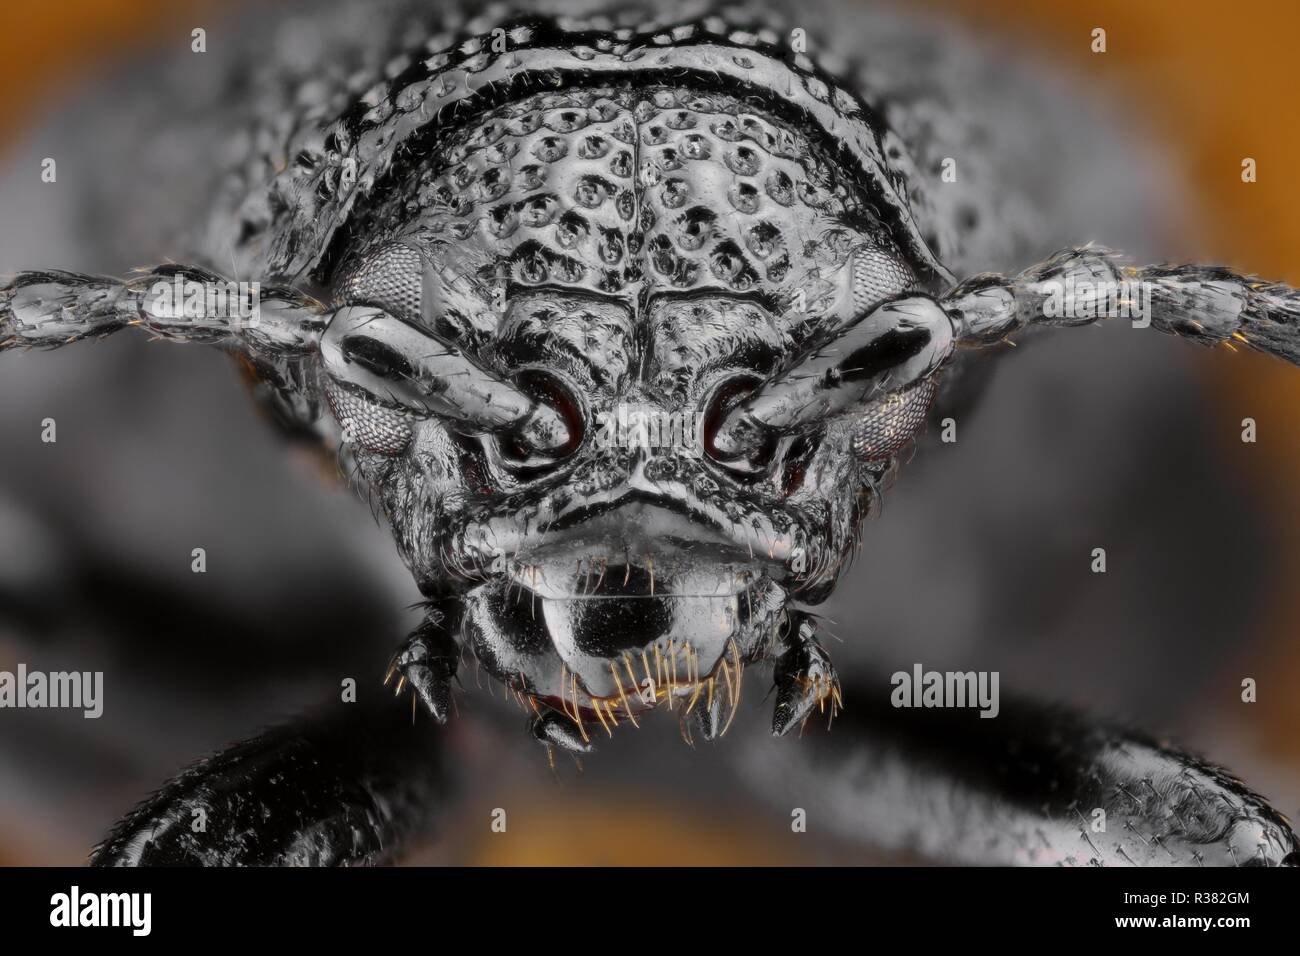 Extrem scharfe und detaillierte Studie über ein Insekt Kopf mit einem Makroobjektiv aus vielen Bildern in eine sehr scharfe Foto gestapelt. Stockfoto